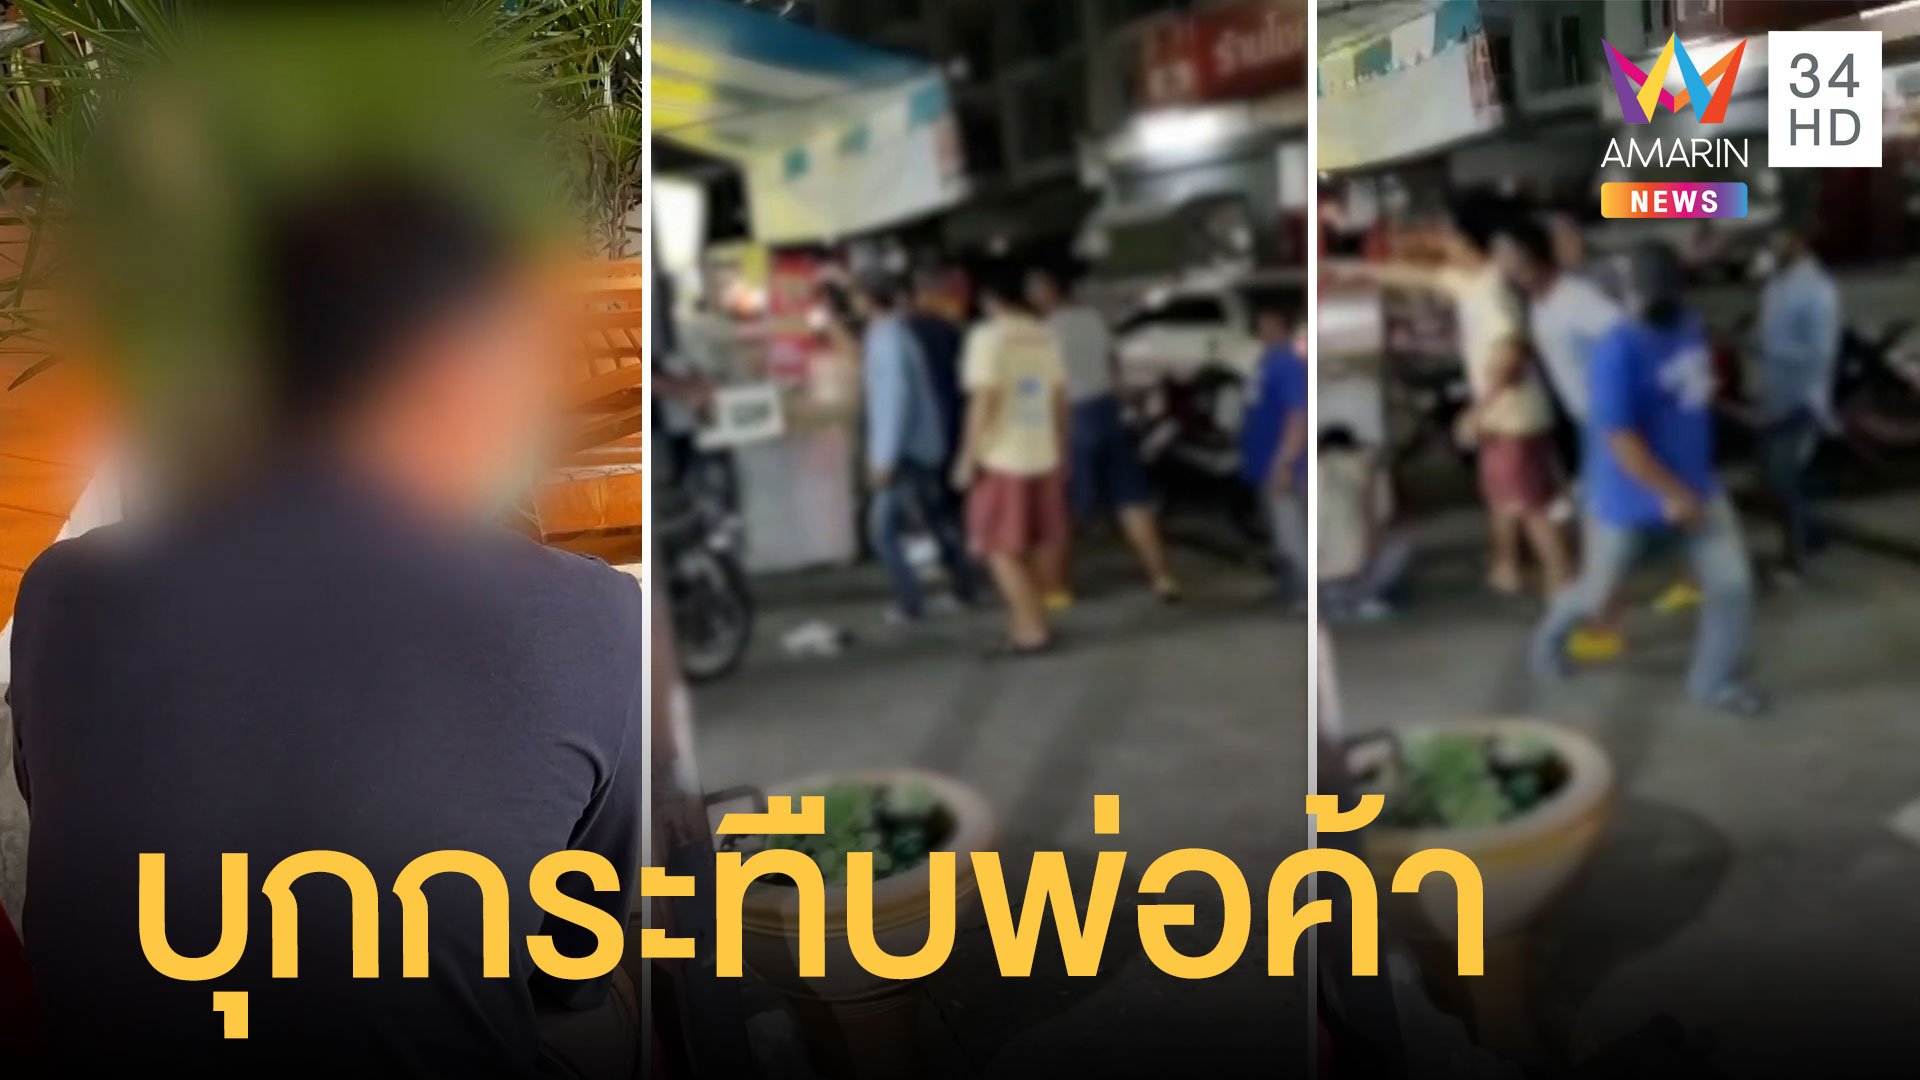 ผู้ช่วยผู้ใหญ่บ้านยกพวกรุมทำร้ายพ่อค้าอาหารตามสั่ง | ข่าวเที่ยงอมรินทร์ | 13 พ.ย. 64 | AMARIN TVHD34